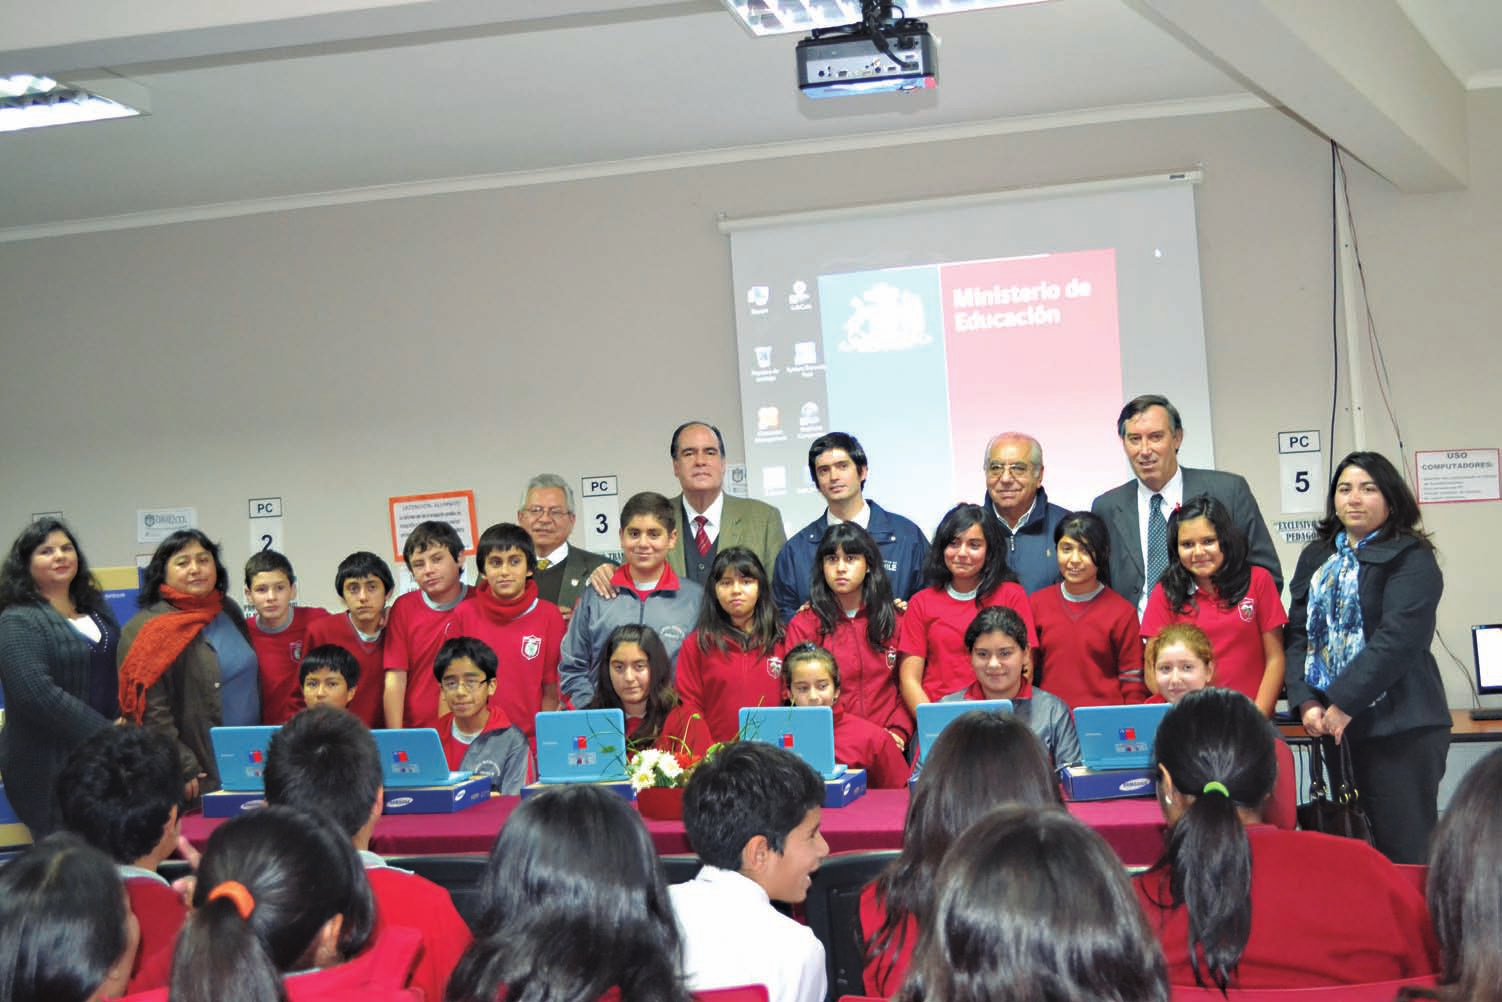 Entrega de computadores a 45 alumnos de séptimo básico de escuelas de Malloa, Pelequén, Corcolén, Panquehue, Limahue y Pelequén Viejo, en el marco del programa Yo elijo mi PC. 13 de mayo 2013.